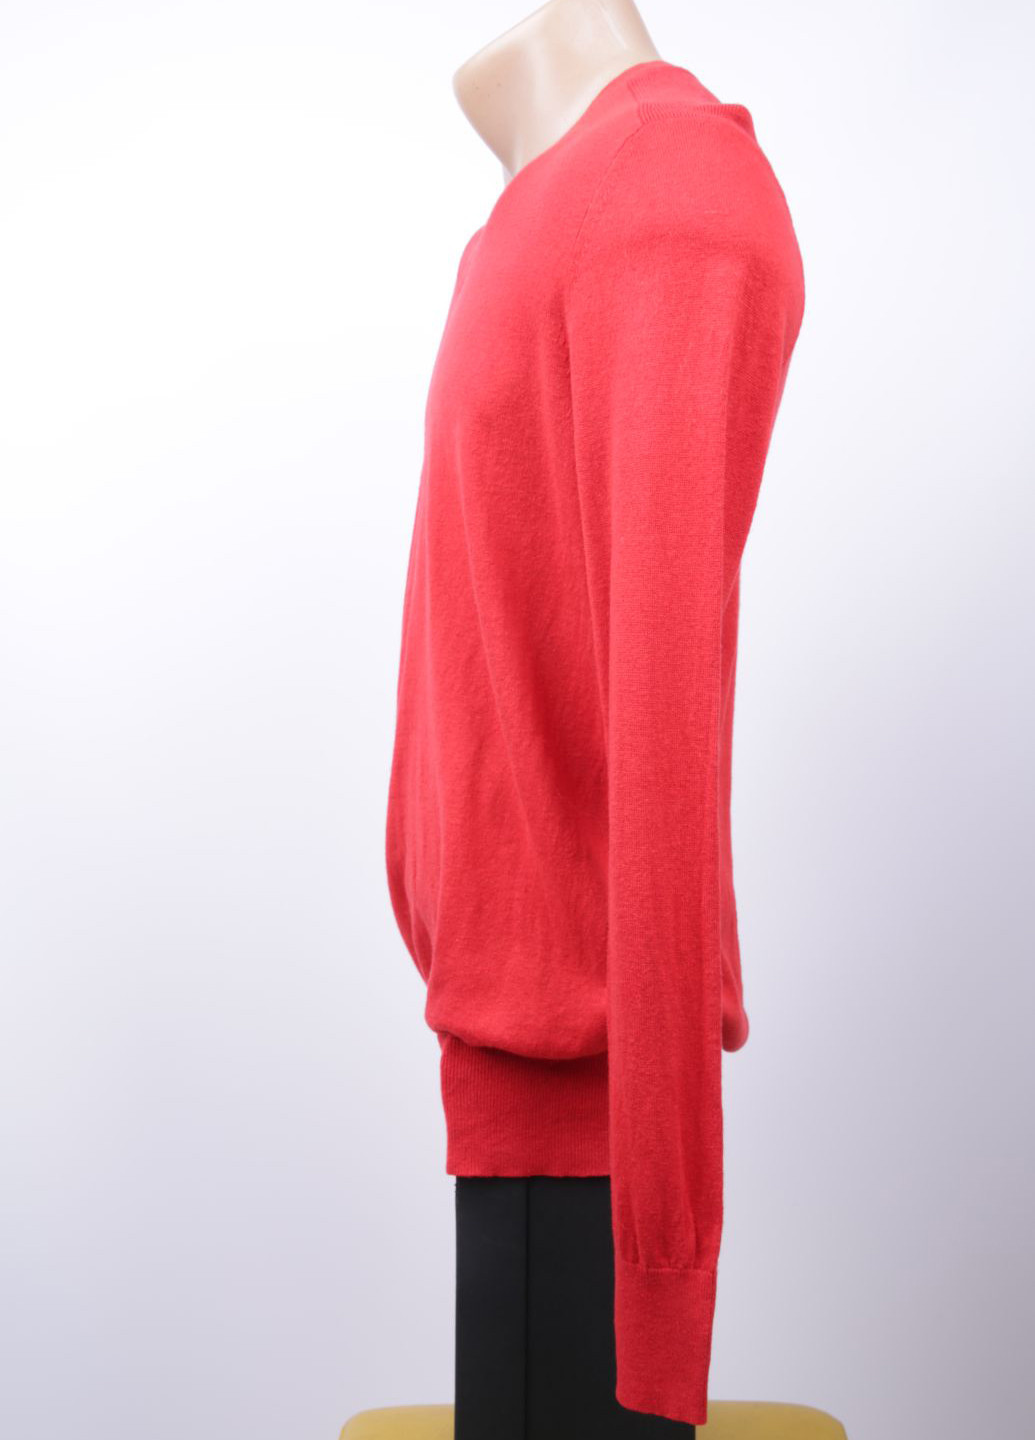 Червоний демісезонний пуловер пуловер Banana Republic